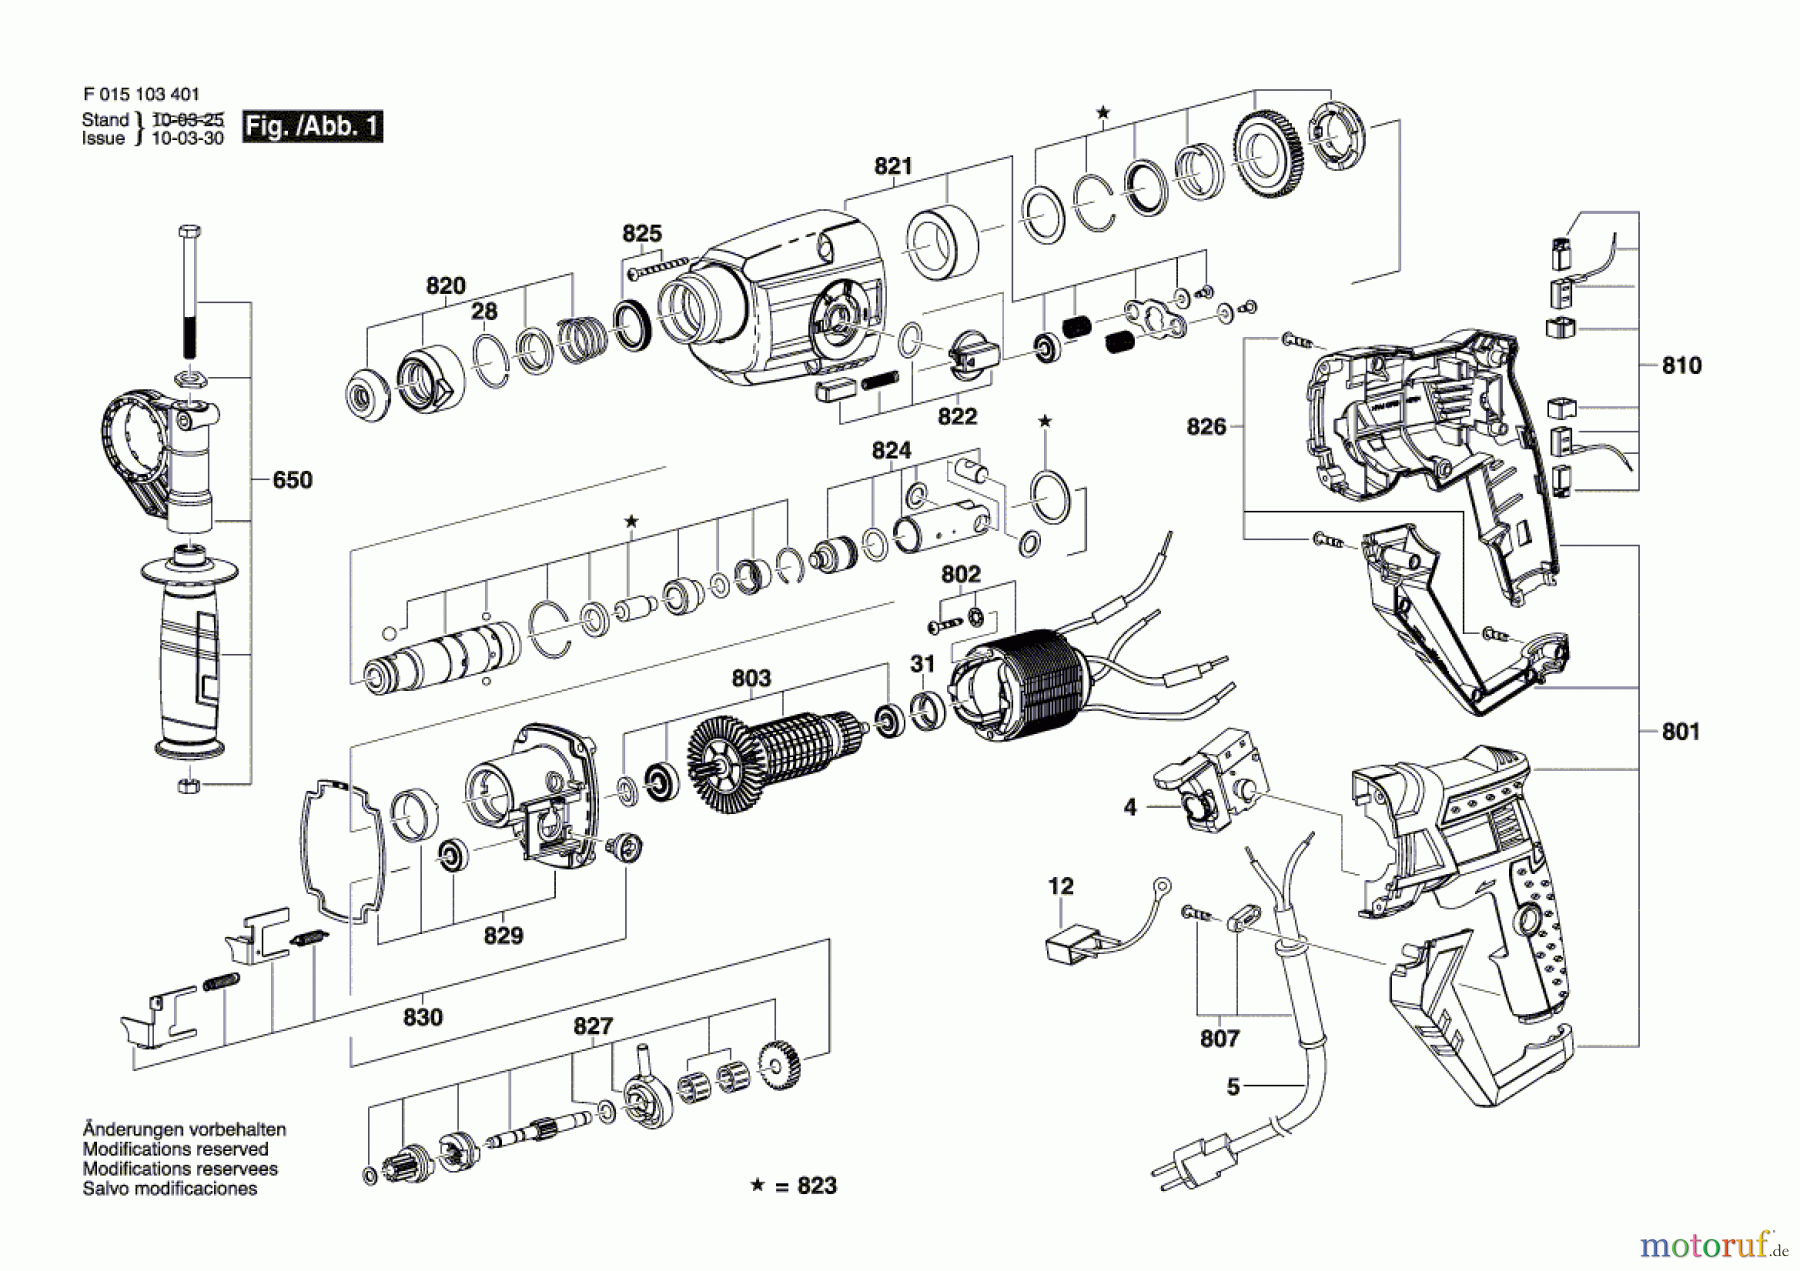  Bosch Werkzeug Bohrhammer 1034 Seite 1